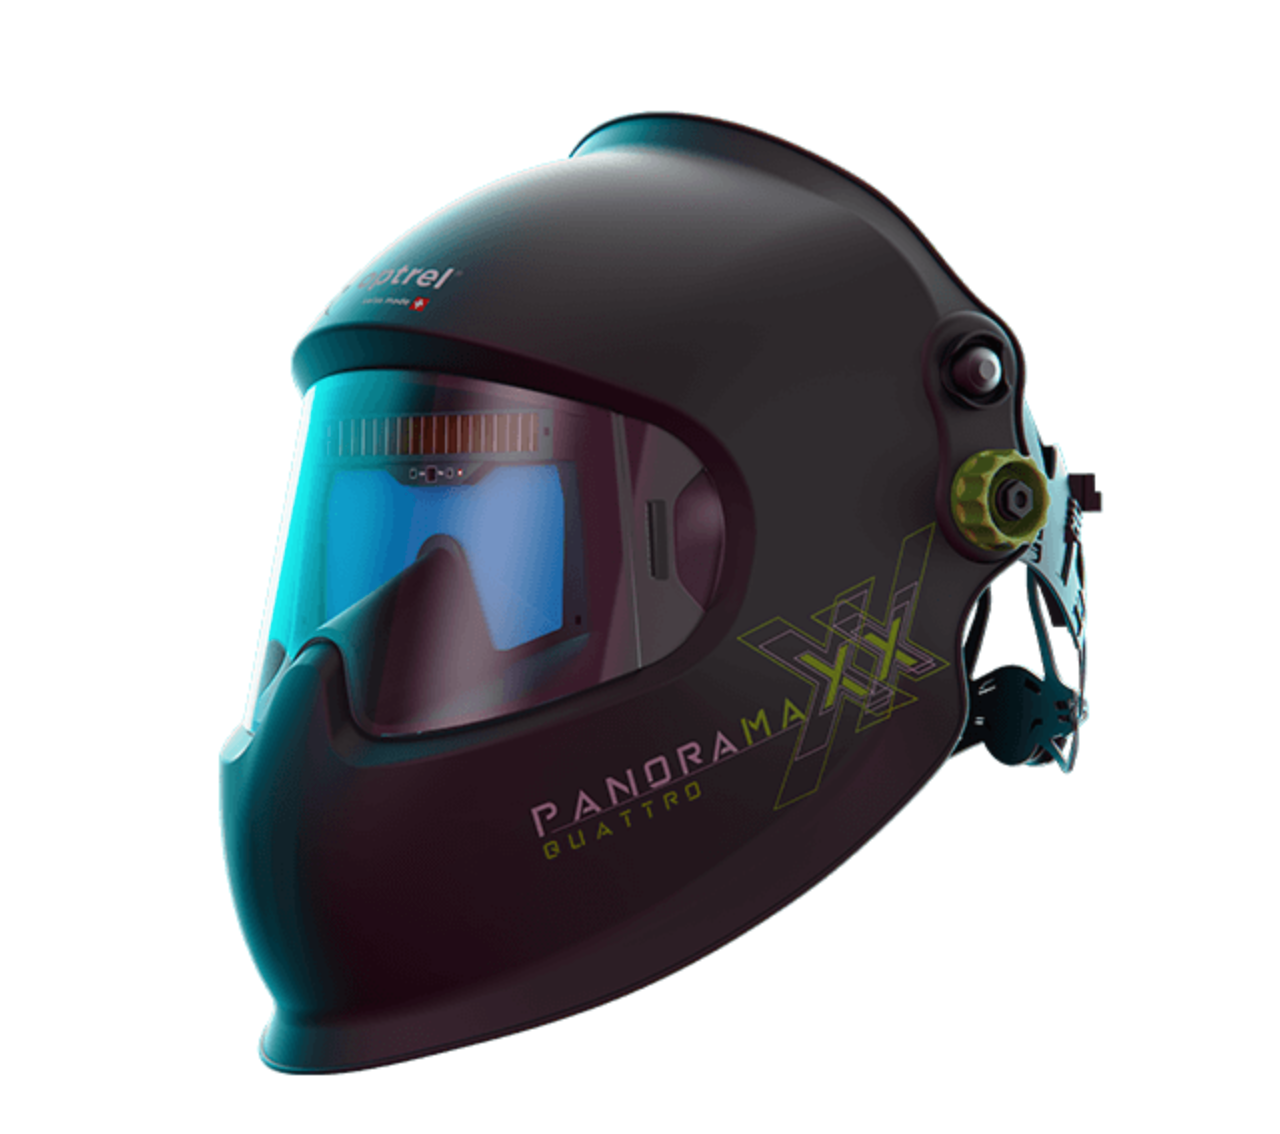 Optrel Panoramaxx Welding Helmet